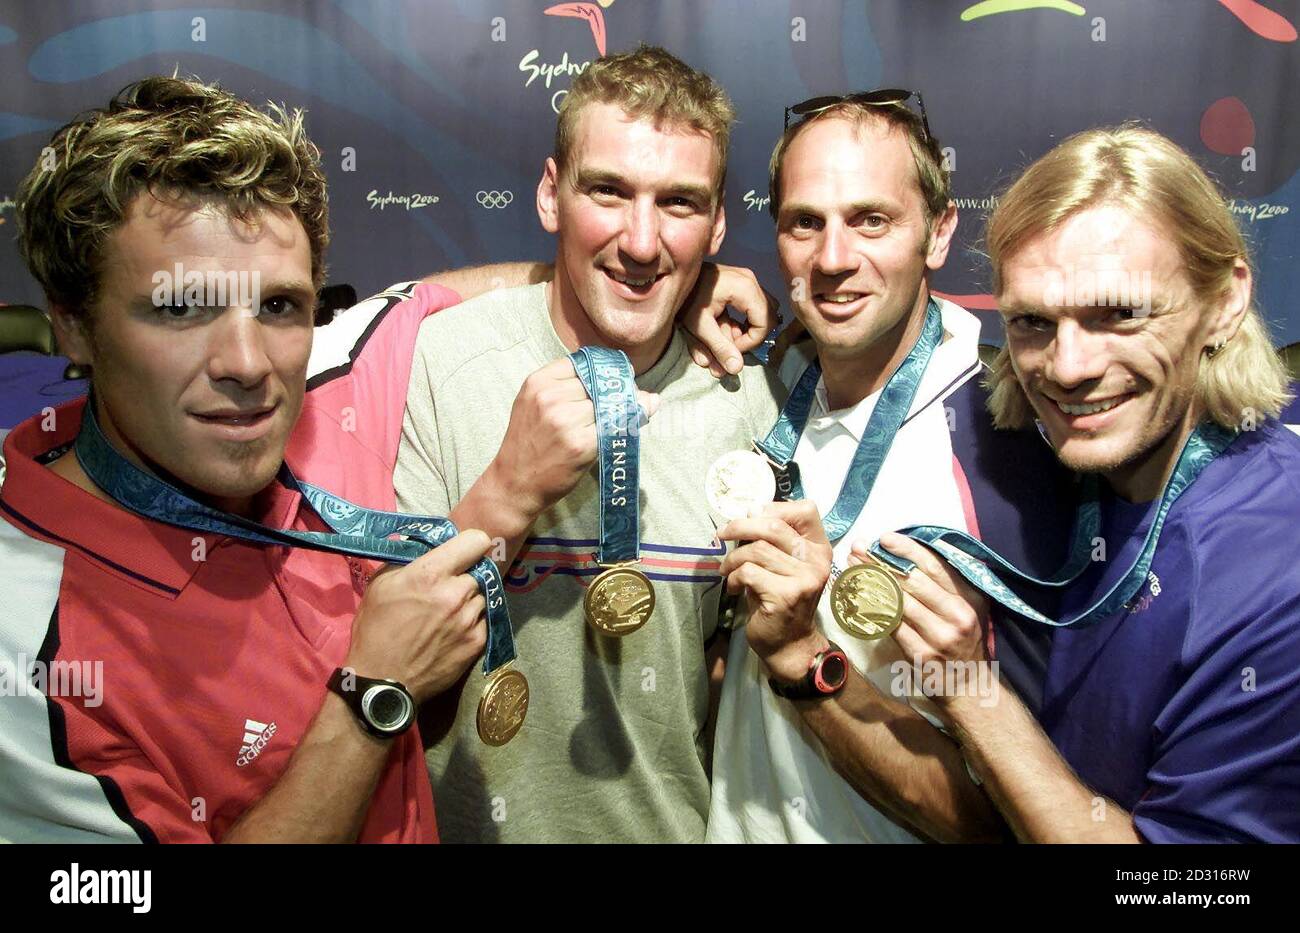 I vogatori britannici (da sinistra a destra) James Cracknell, Matthew Pinsent, Steve Redgrave e Tim Foster detengono le medaglie d'oro che hanno vinto nella finale maschile di Coxless Four ai Giochi Olimpici. Foto Stock